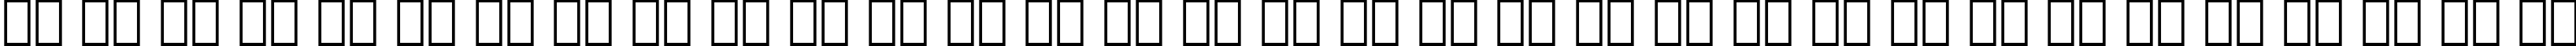 Пример написания русского алфавита шрифтом BernhardMod BT Bold Italic